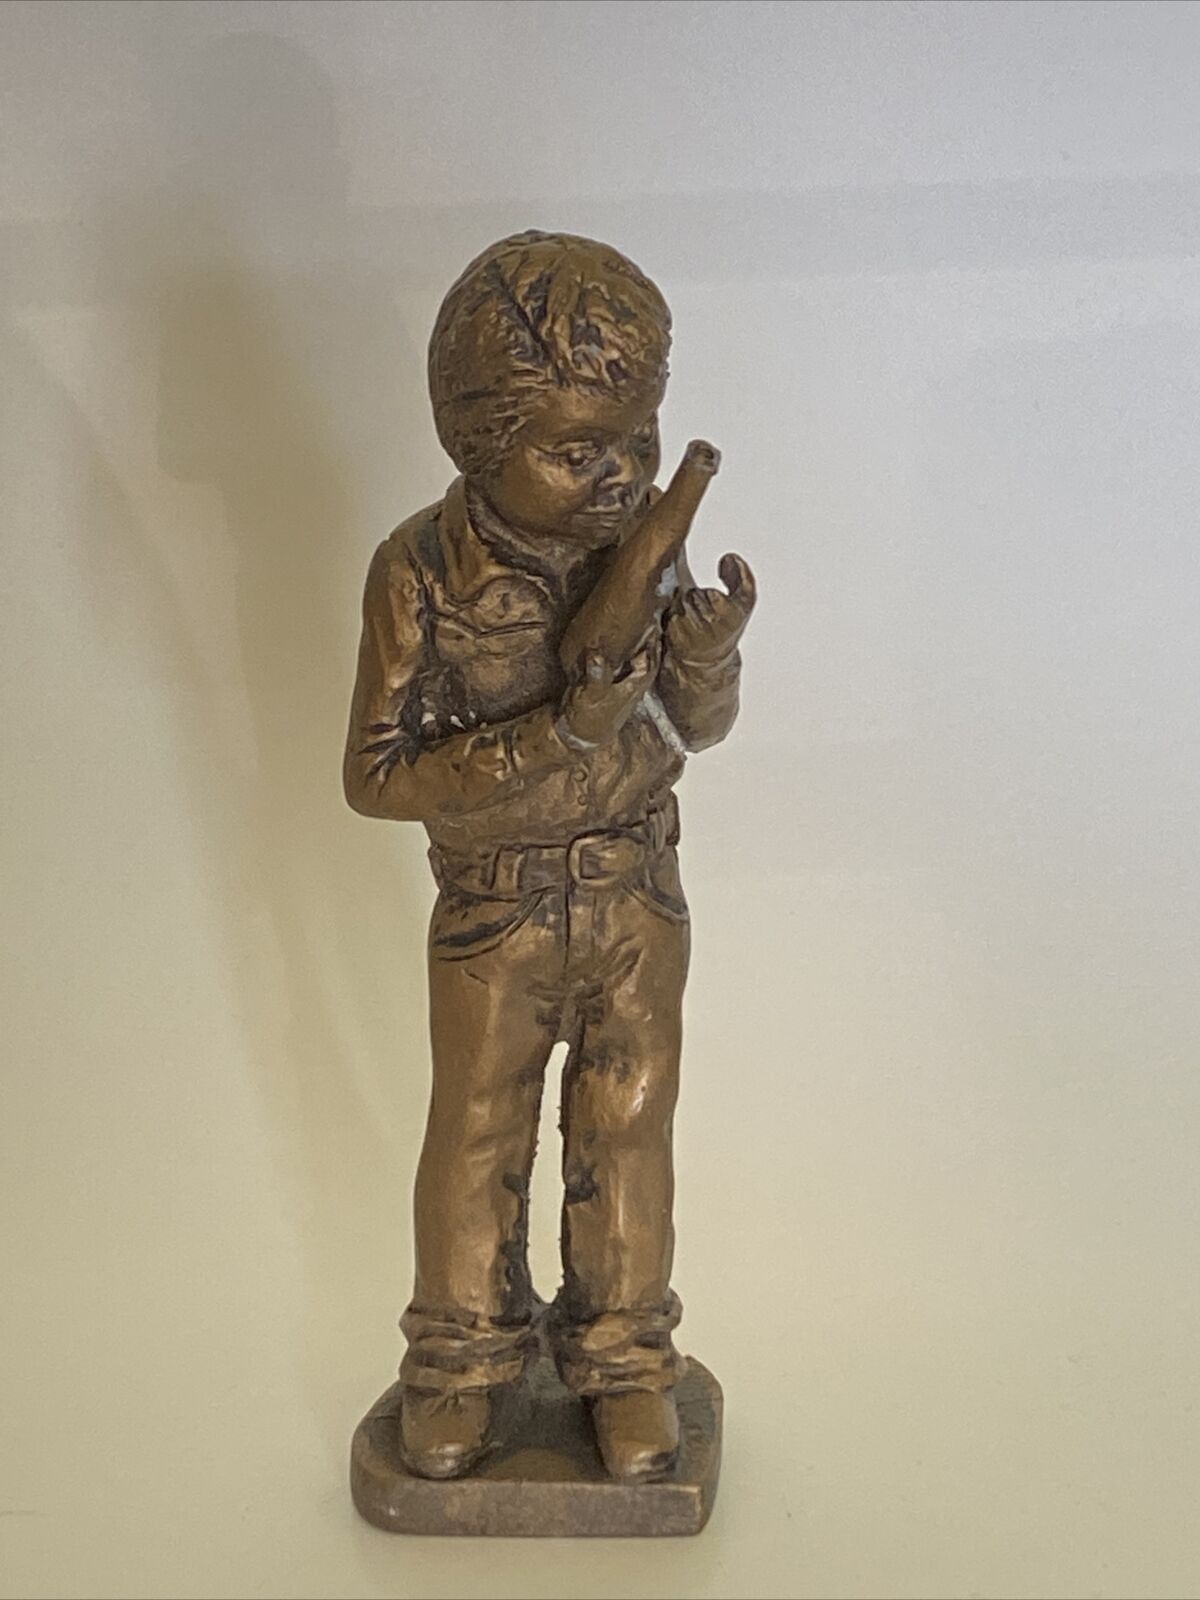 Vintage Boy Sculpture Figure Statue 4.25”